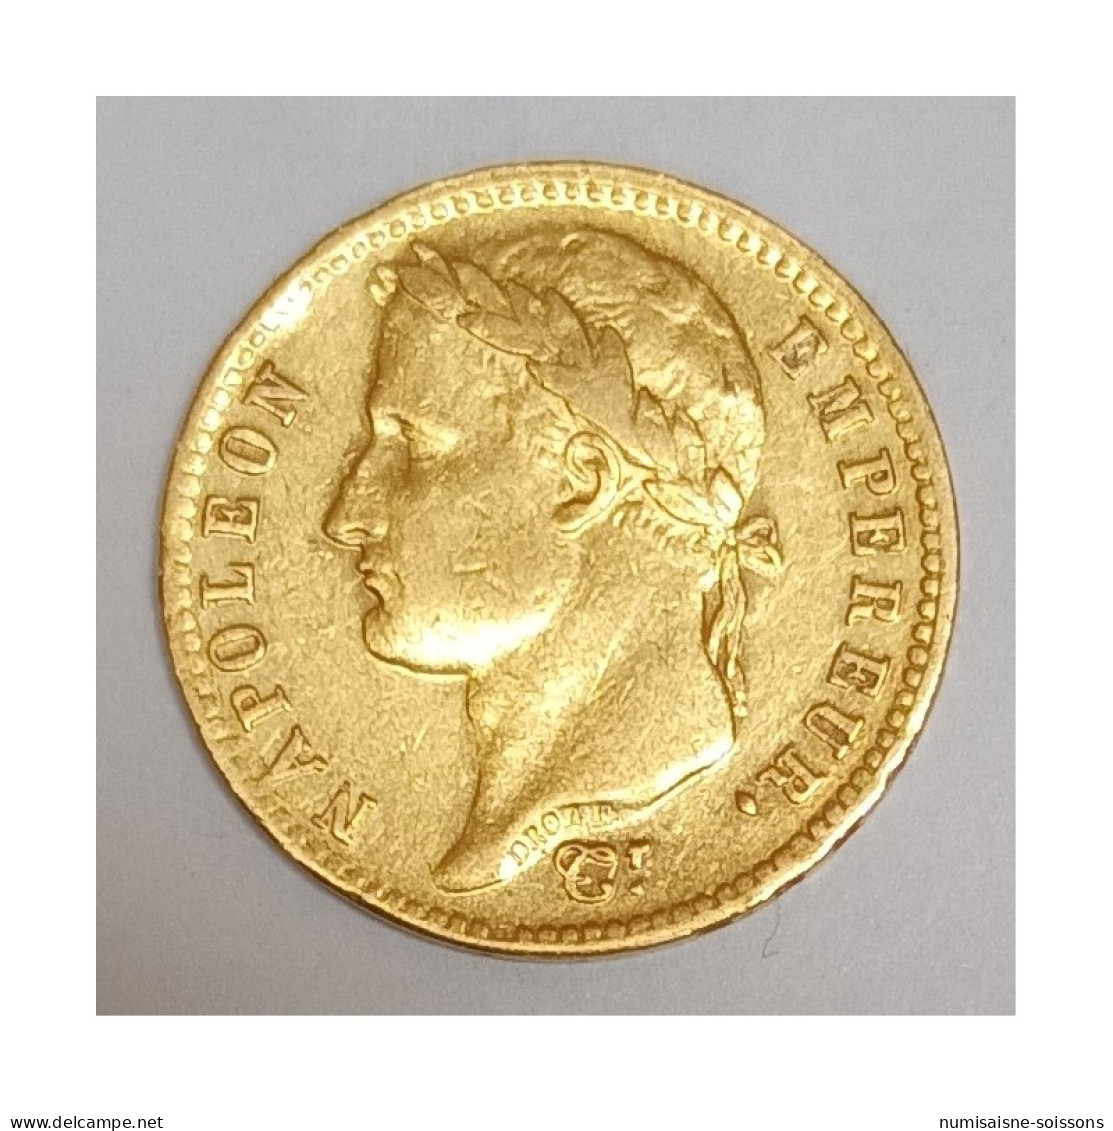 GADOURY 1025 - 20 FRANCS 1811 A - Paris - NAPOLÉON 1er - REVERS EMPIRE - KM 695 - TB+ - 20 Francs (gold)